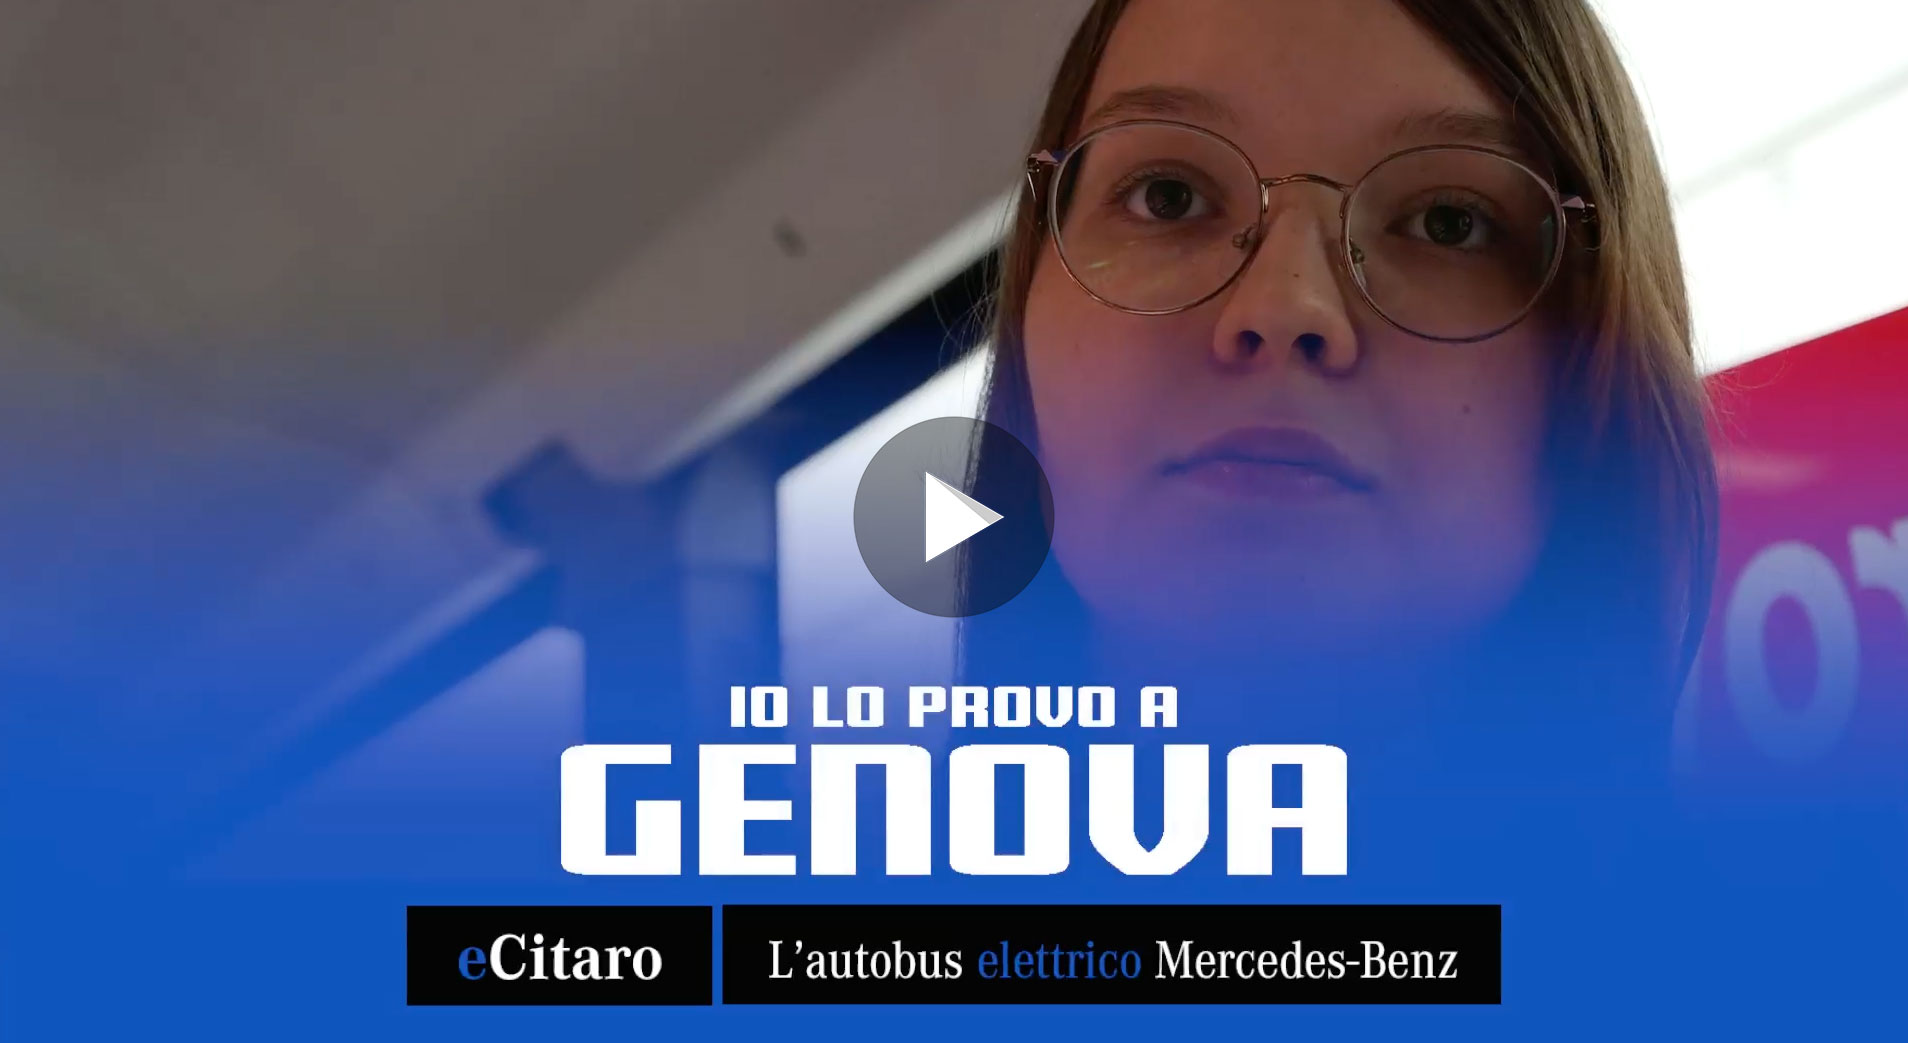 Video gallery eCitaro MercedesBenz in prova a Genova settembre 2019